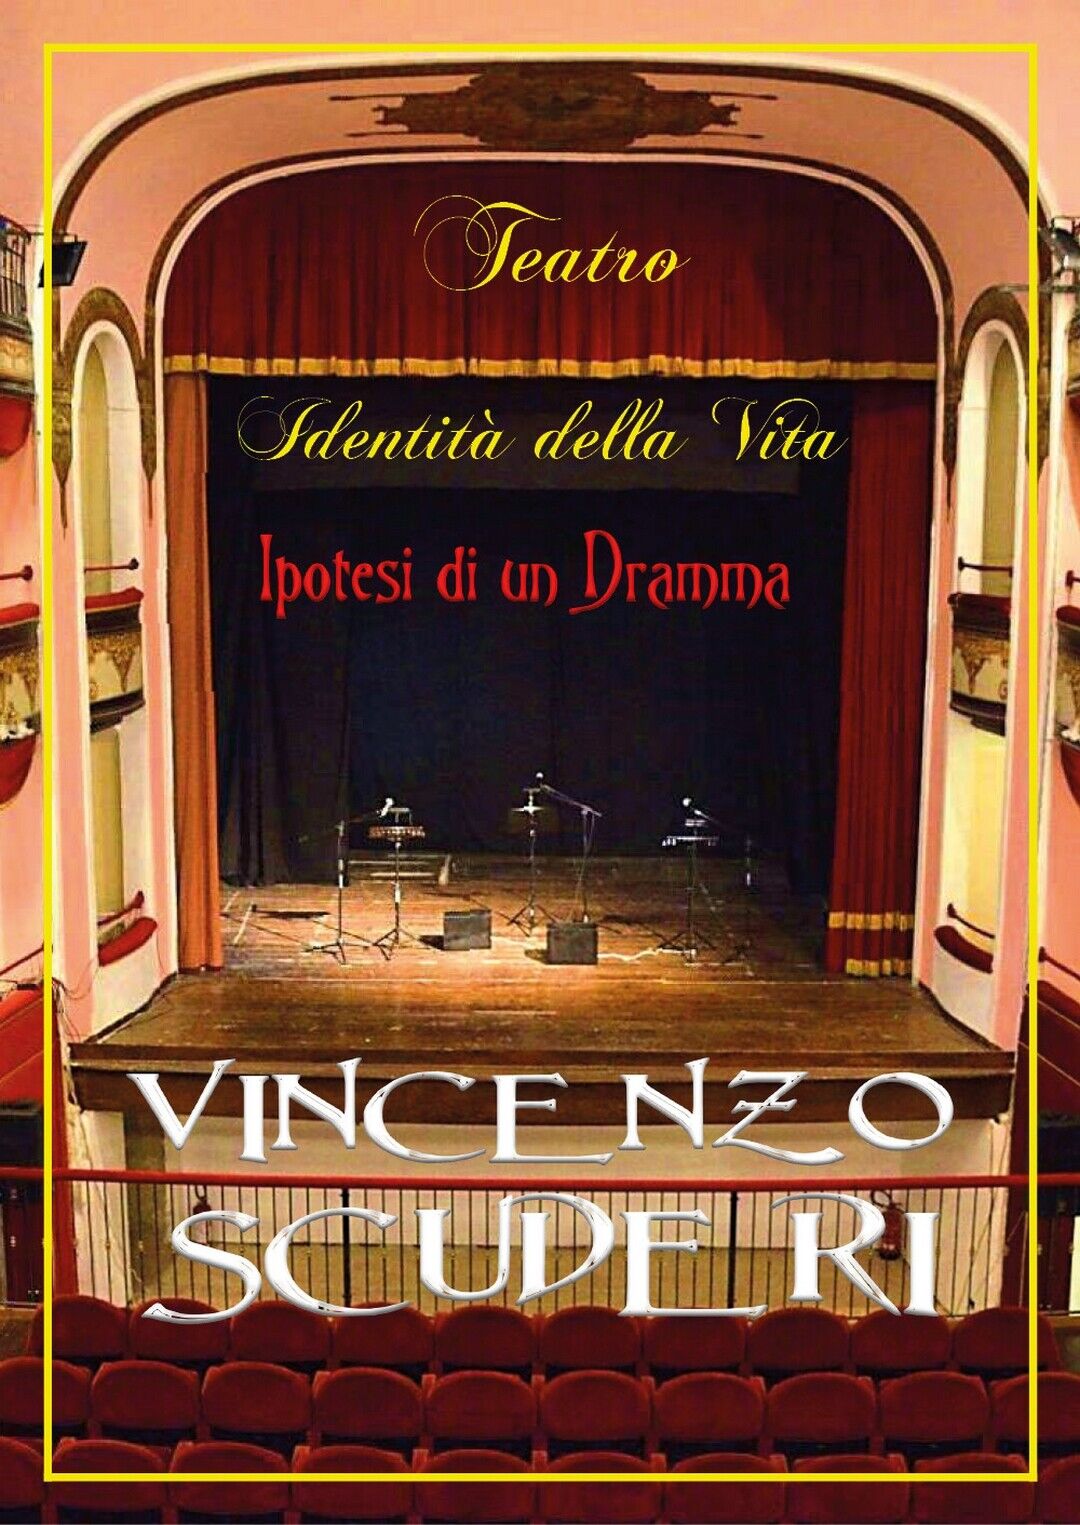 Teatro, identit? della Vita. Ipotesi di un dramma  di Vincenzo Scuderi,  2020